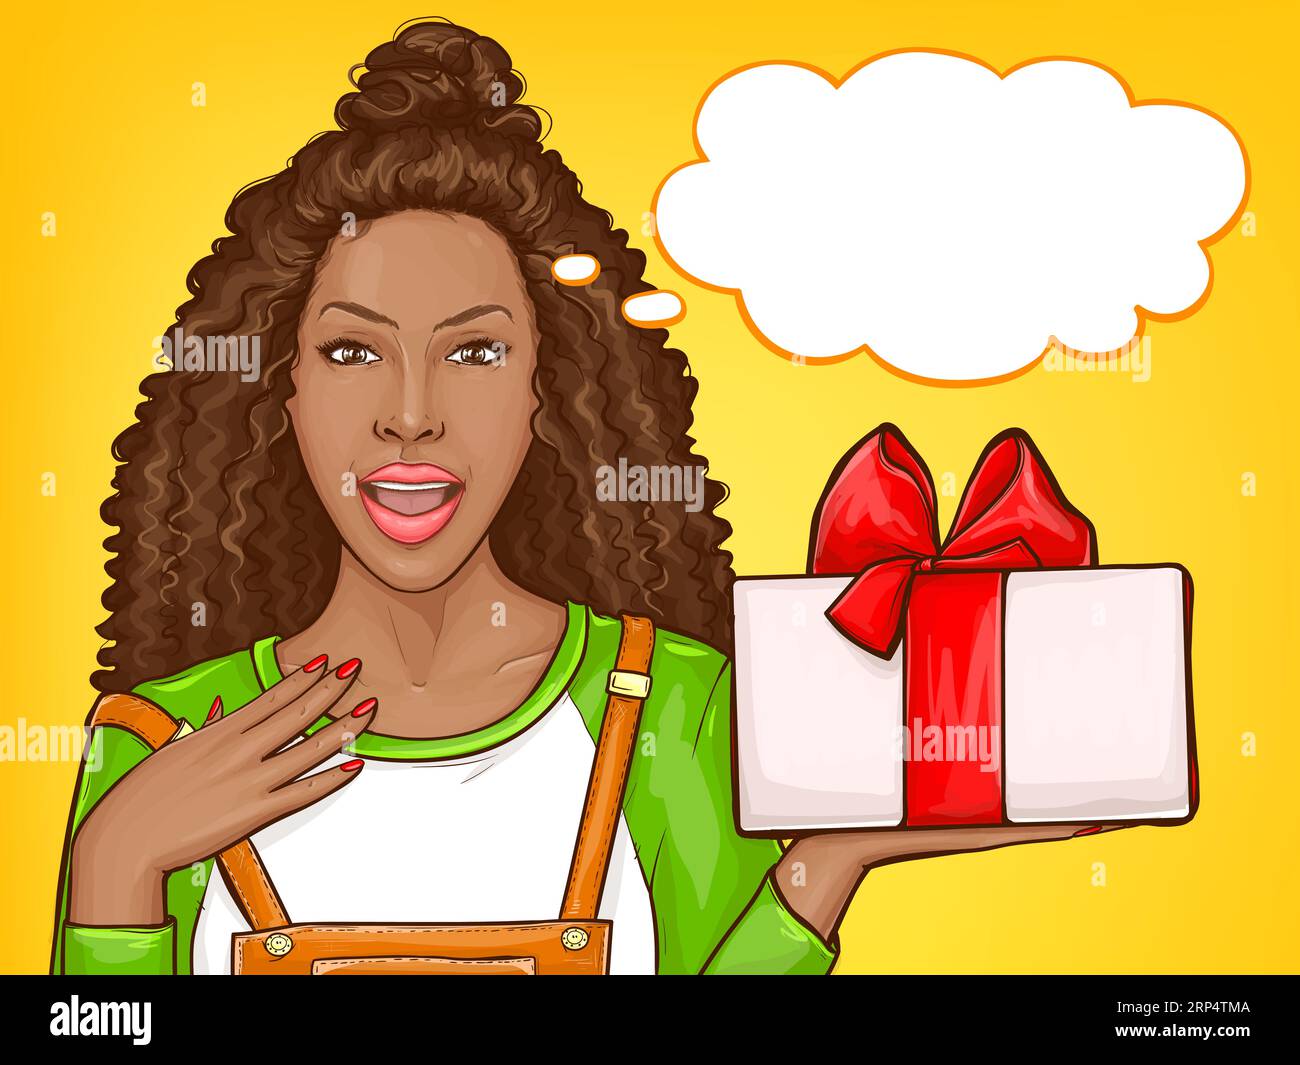 Donna afroamericana con gratitudine che riceve un regalo per le vacanze. Sorpresa ragazza nera con capelli afro, porta regali con fiocco rosso. Illustratore di pop art vettoriale Illustrazione Vettoriale